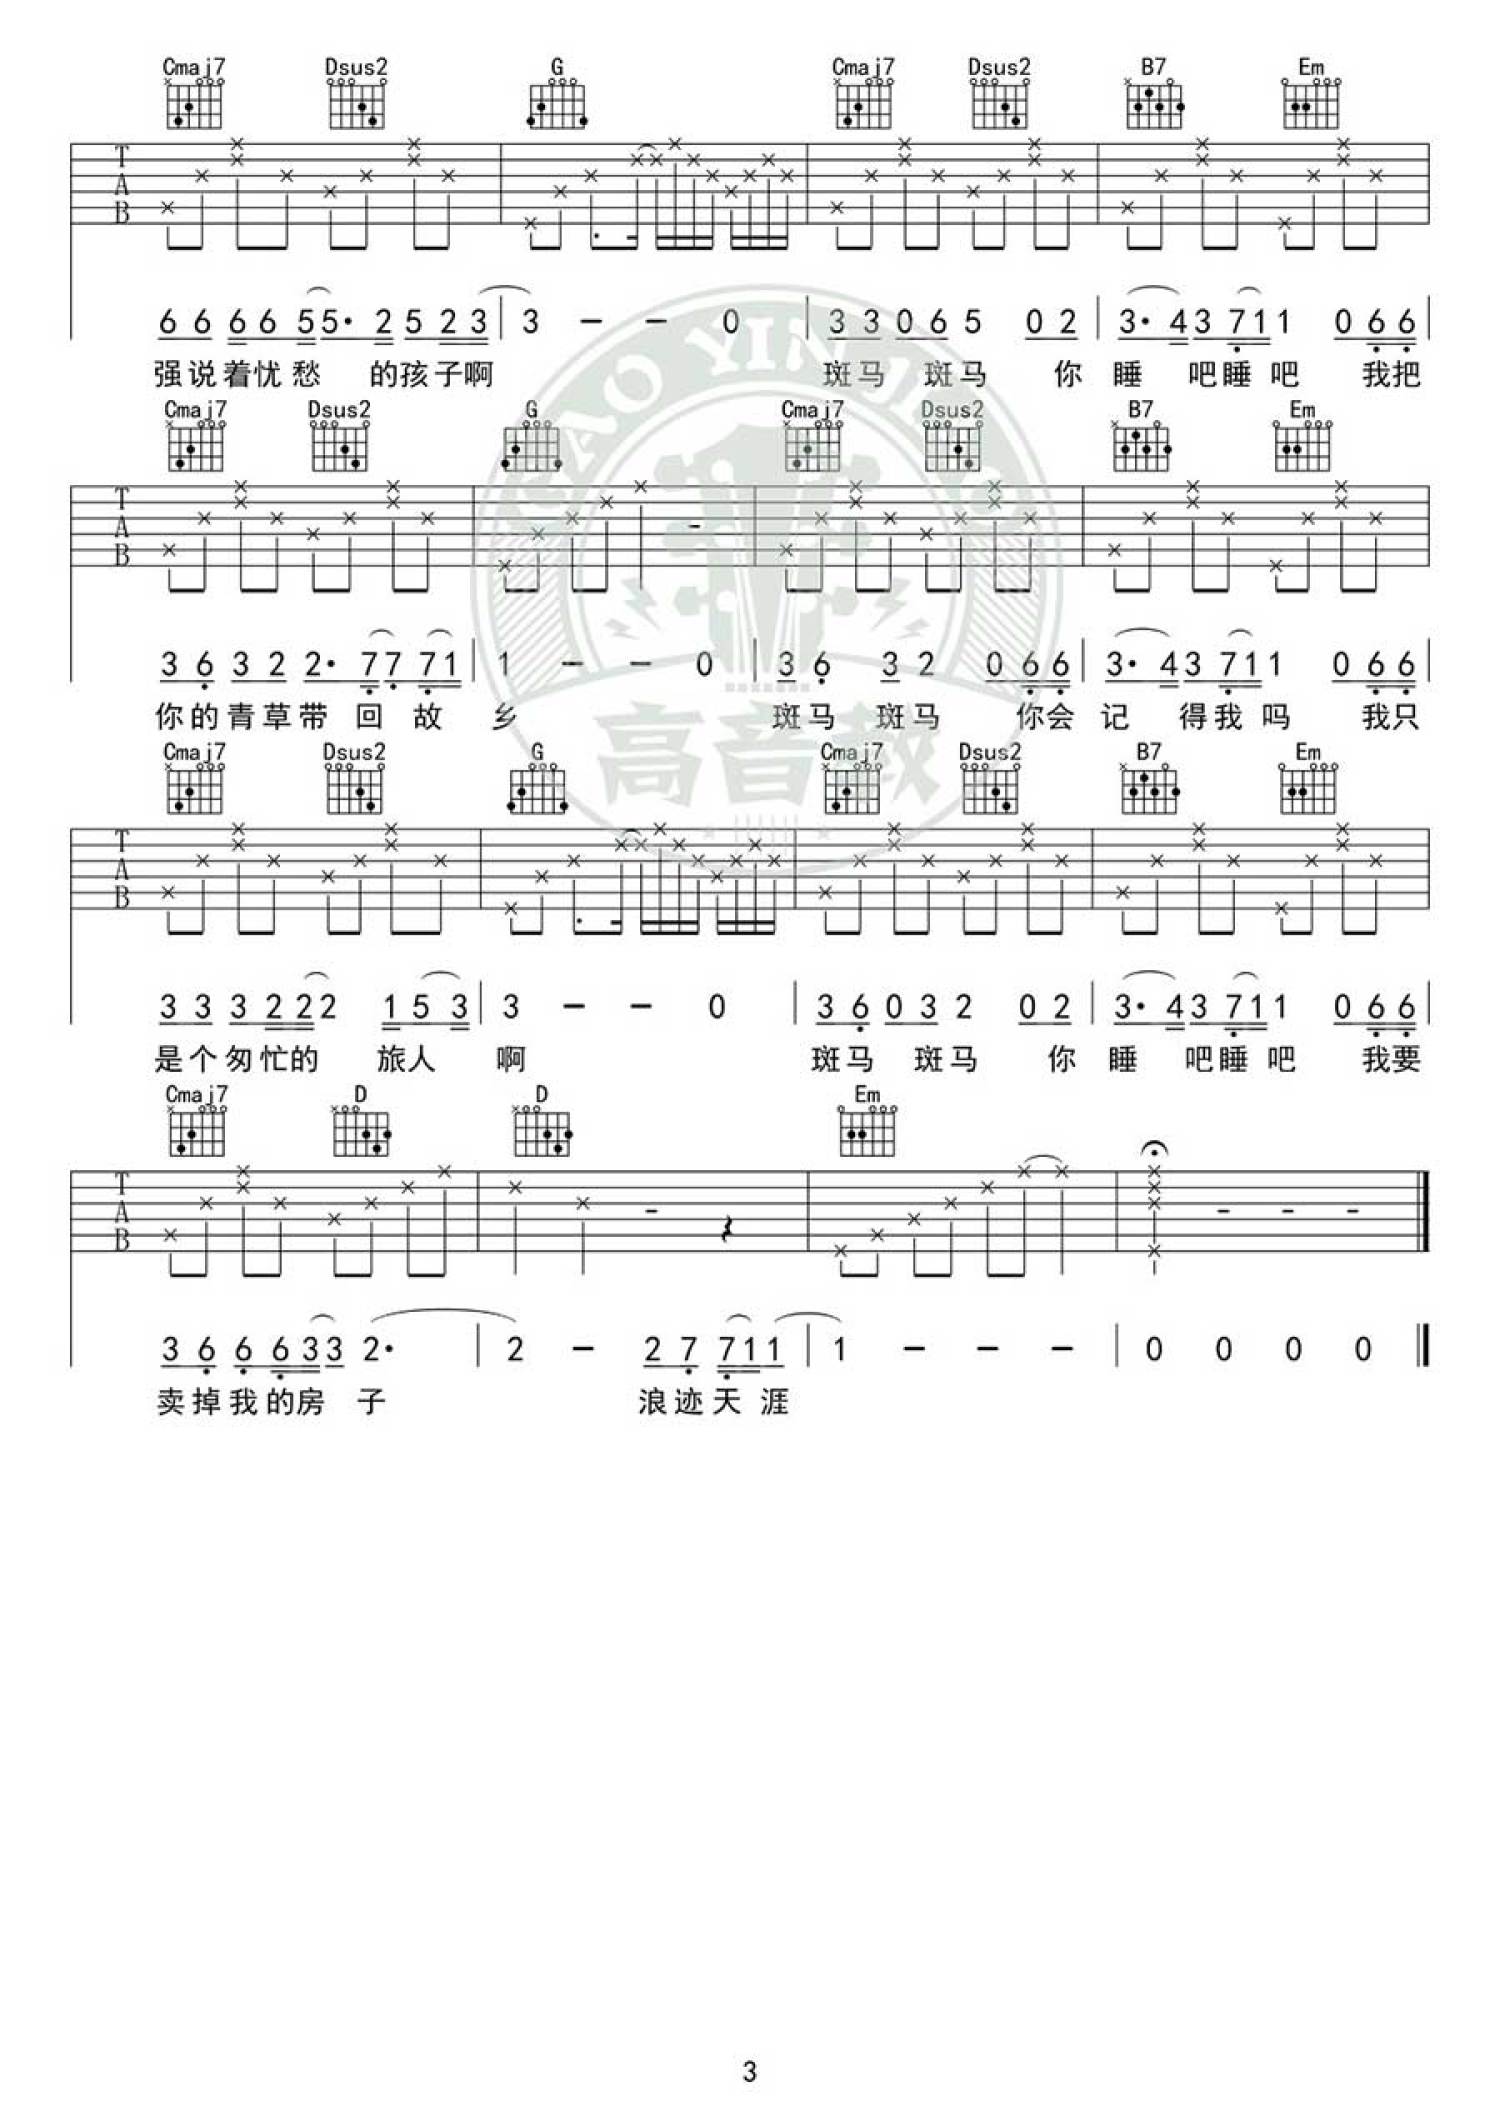 斑马斑马简易版吉他谱 - 虫虫吉他谱免费下载 - 虫虫吉他